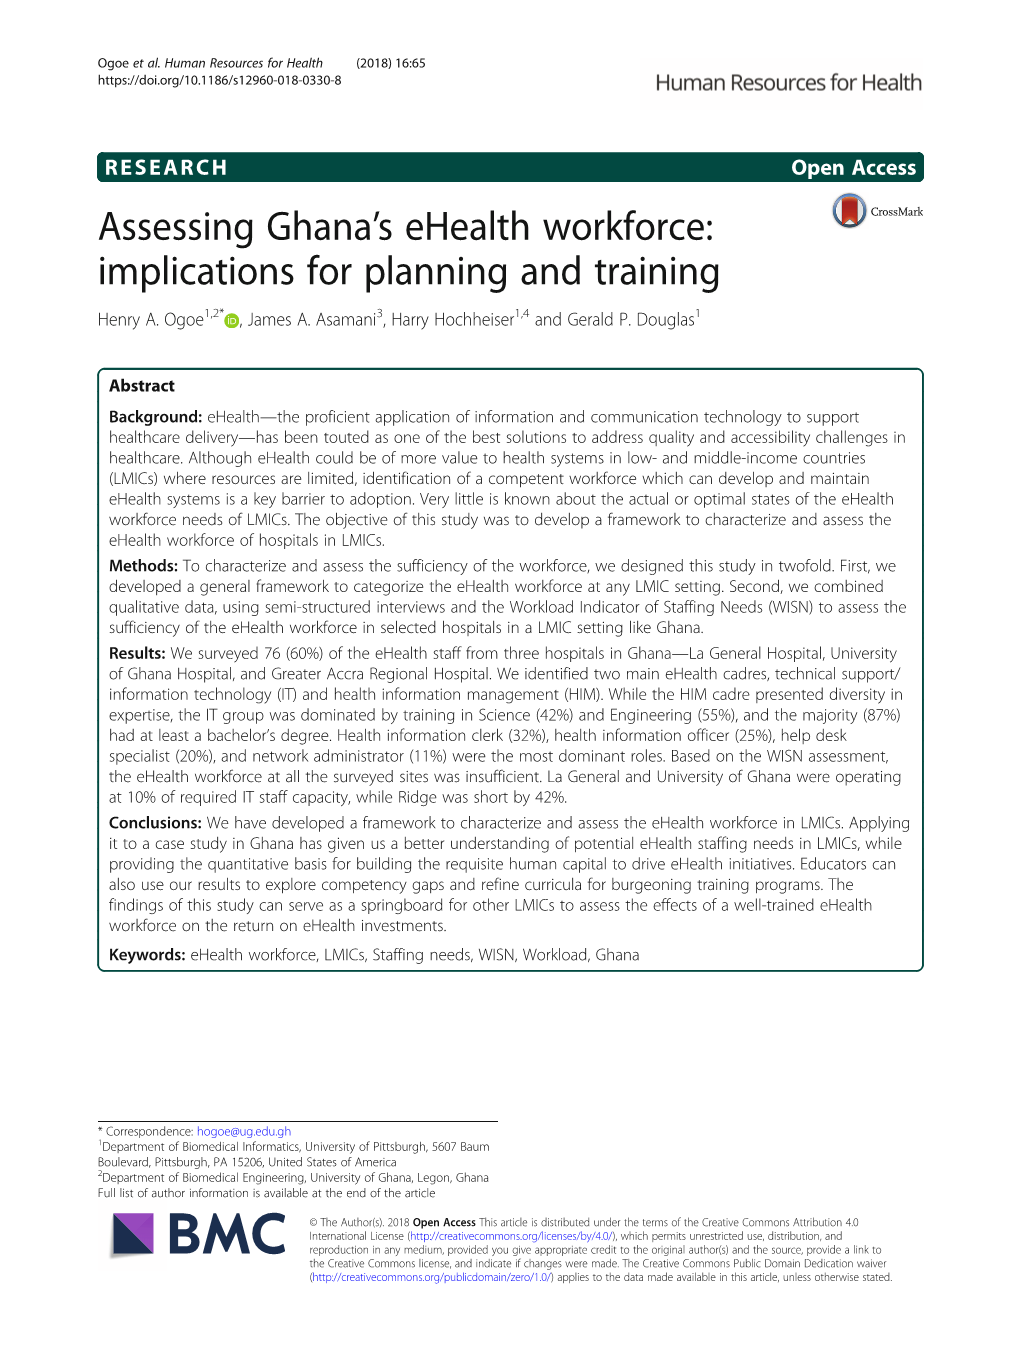 Assessing Ghana's Ehealth Workforce